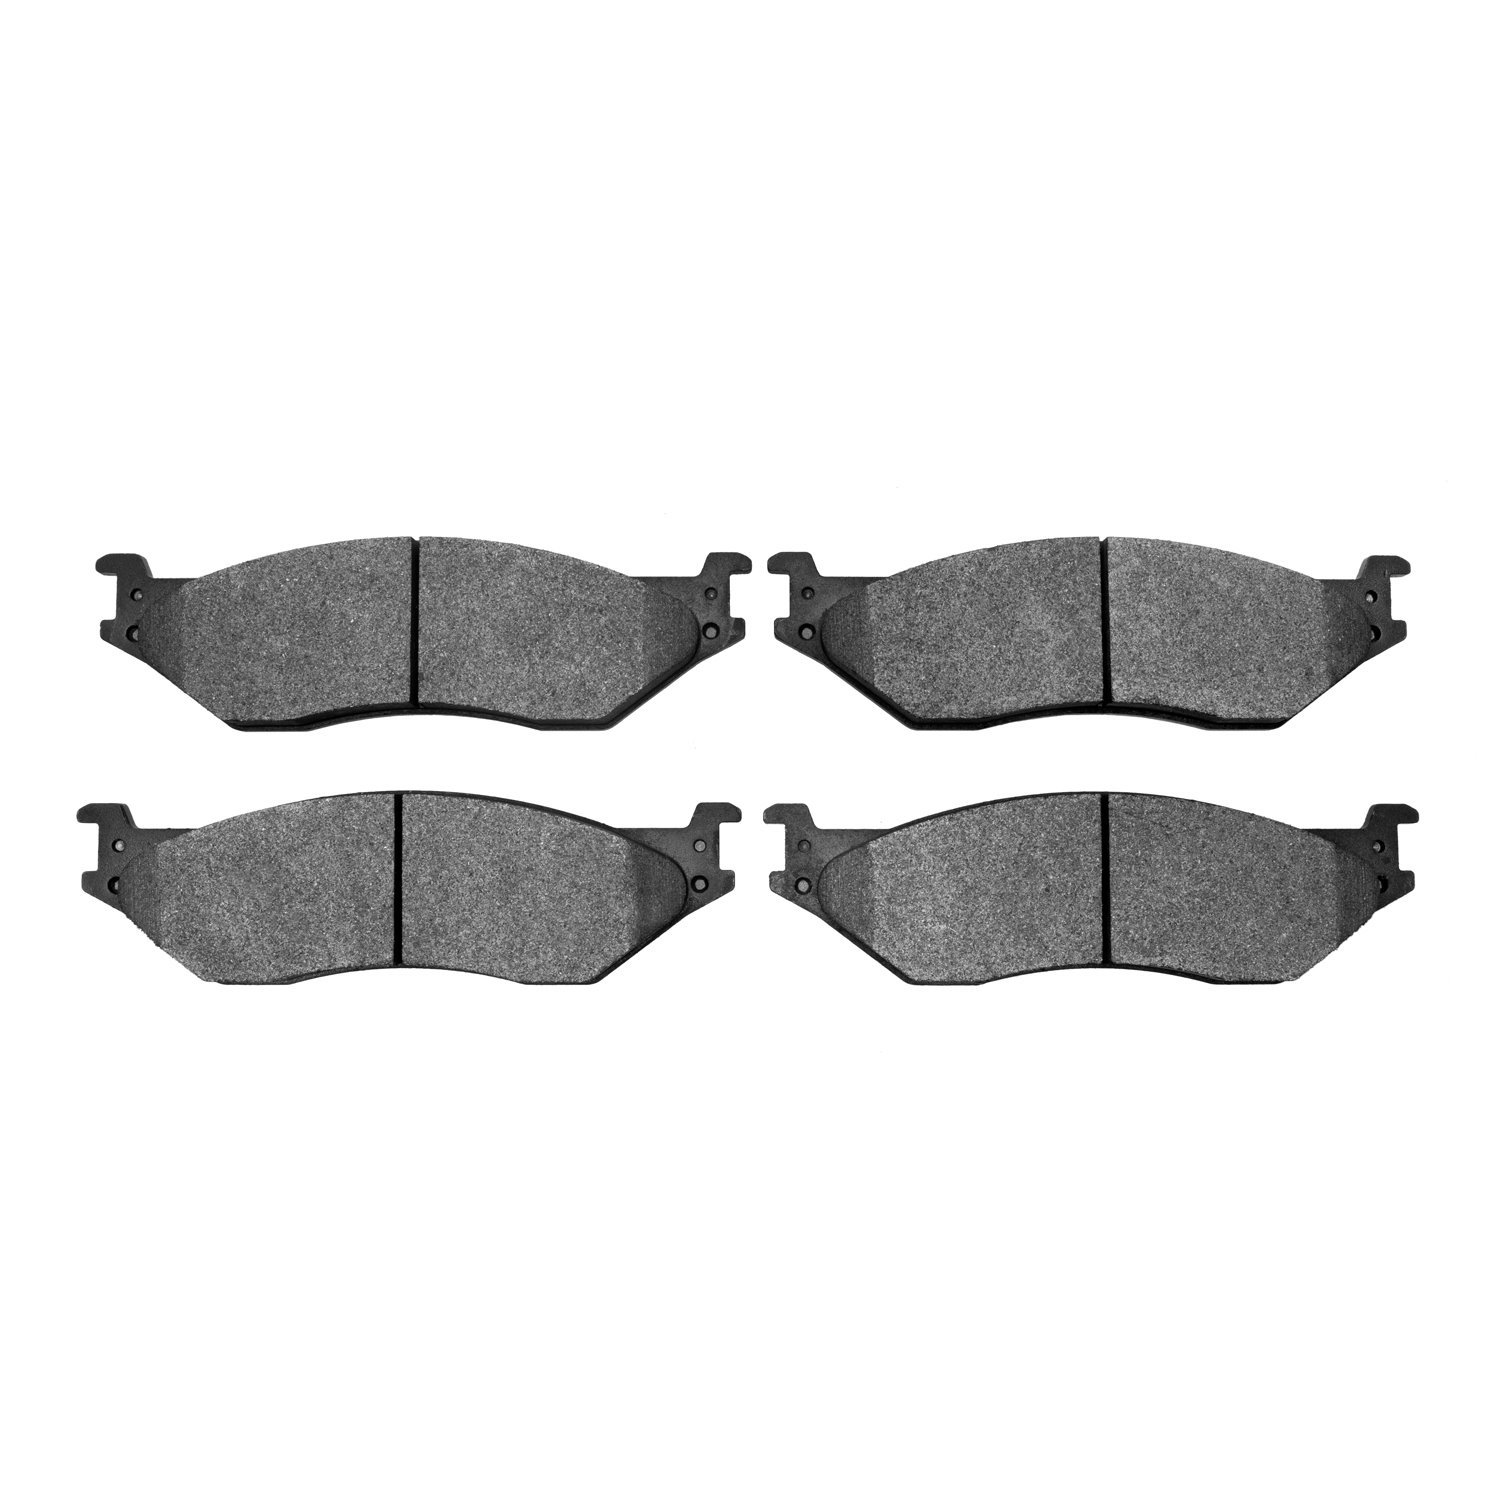 1400-1066-00 Ultimate-Duty Brake Pads Kit, Fits Select Multiple Makes/Models, Position: Rr,Fr & Rr,Fr,Front,Rear